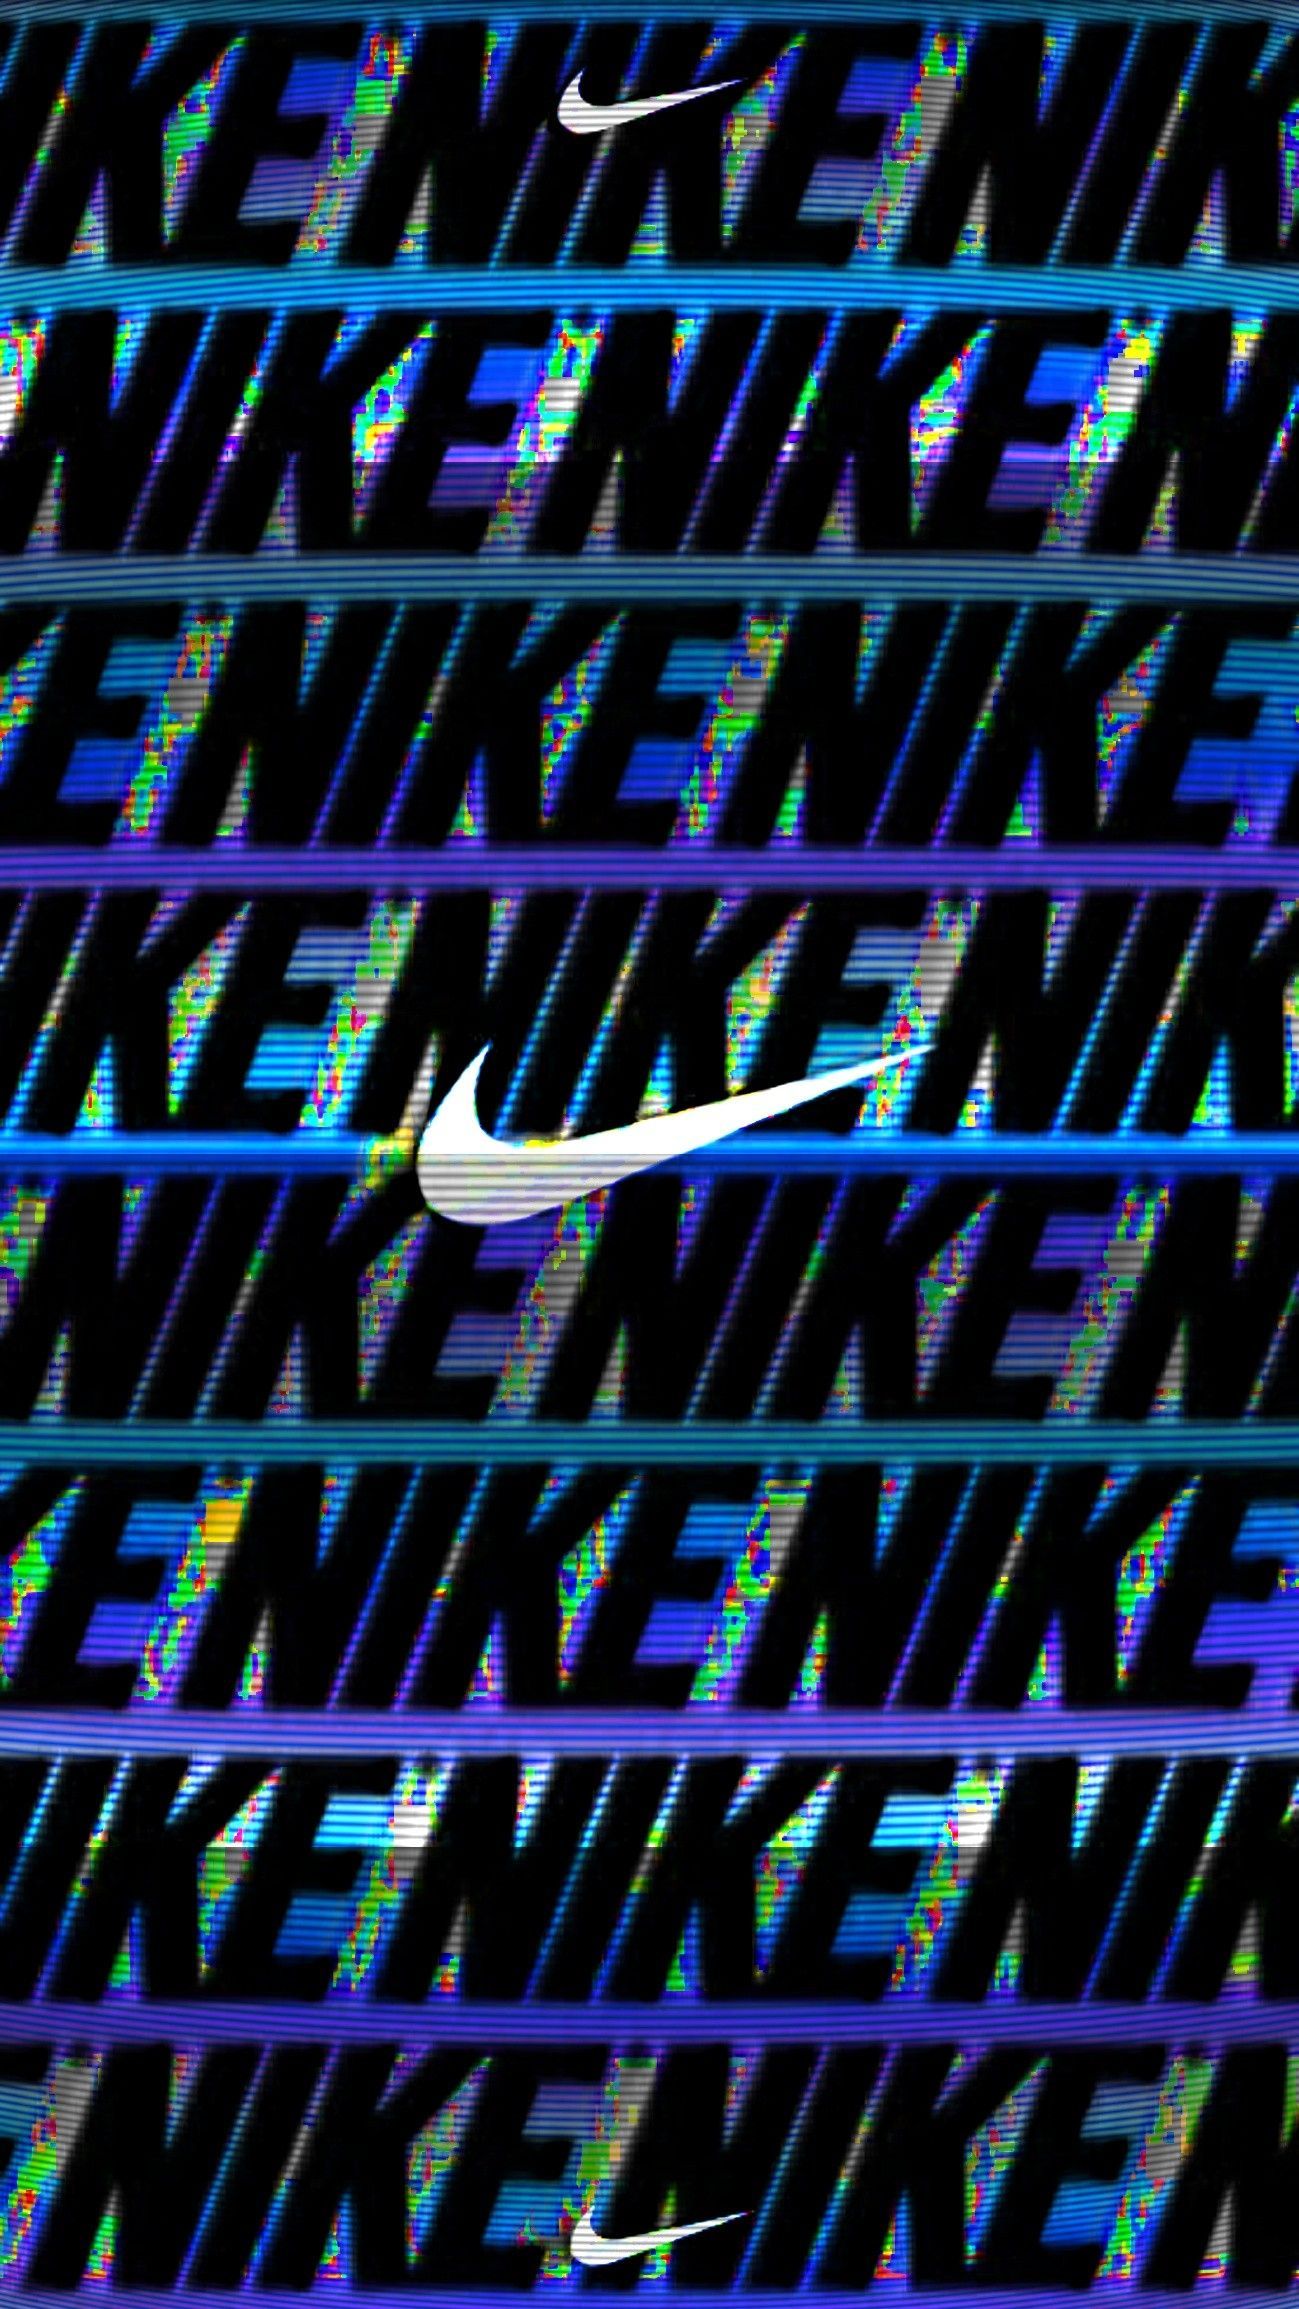 Background. Nike wallpaper, Cool adidas wallpaper, Nike logo wallpaper